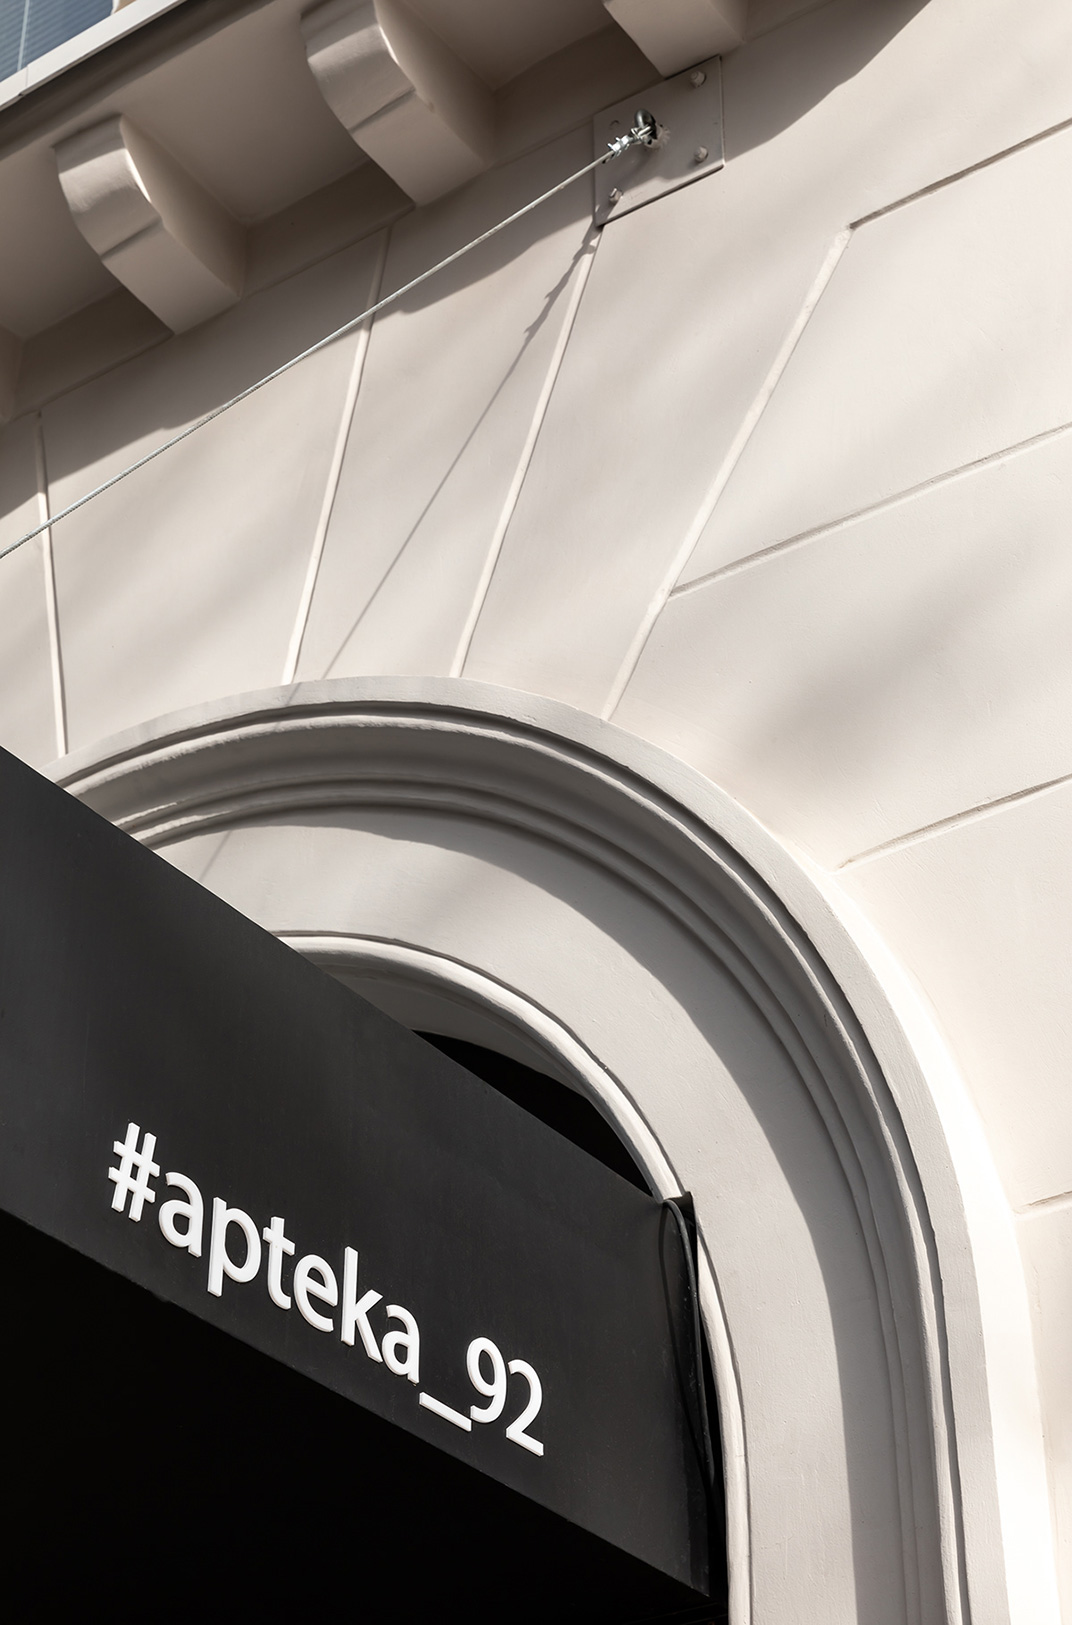 咖啡店Apteka 92 咖啡店 乌克兰 简洁风 插画设计 logo设计 vi设计 空间设计